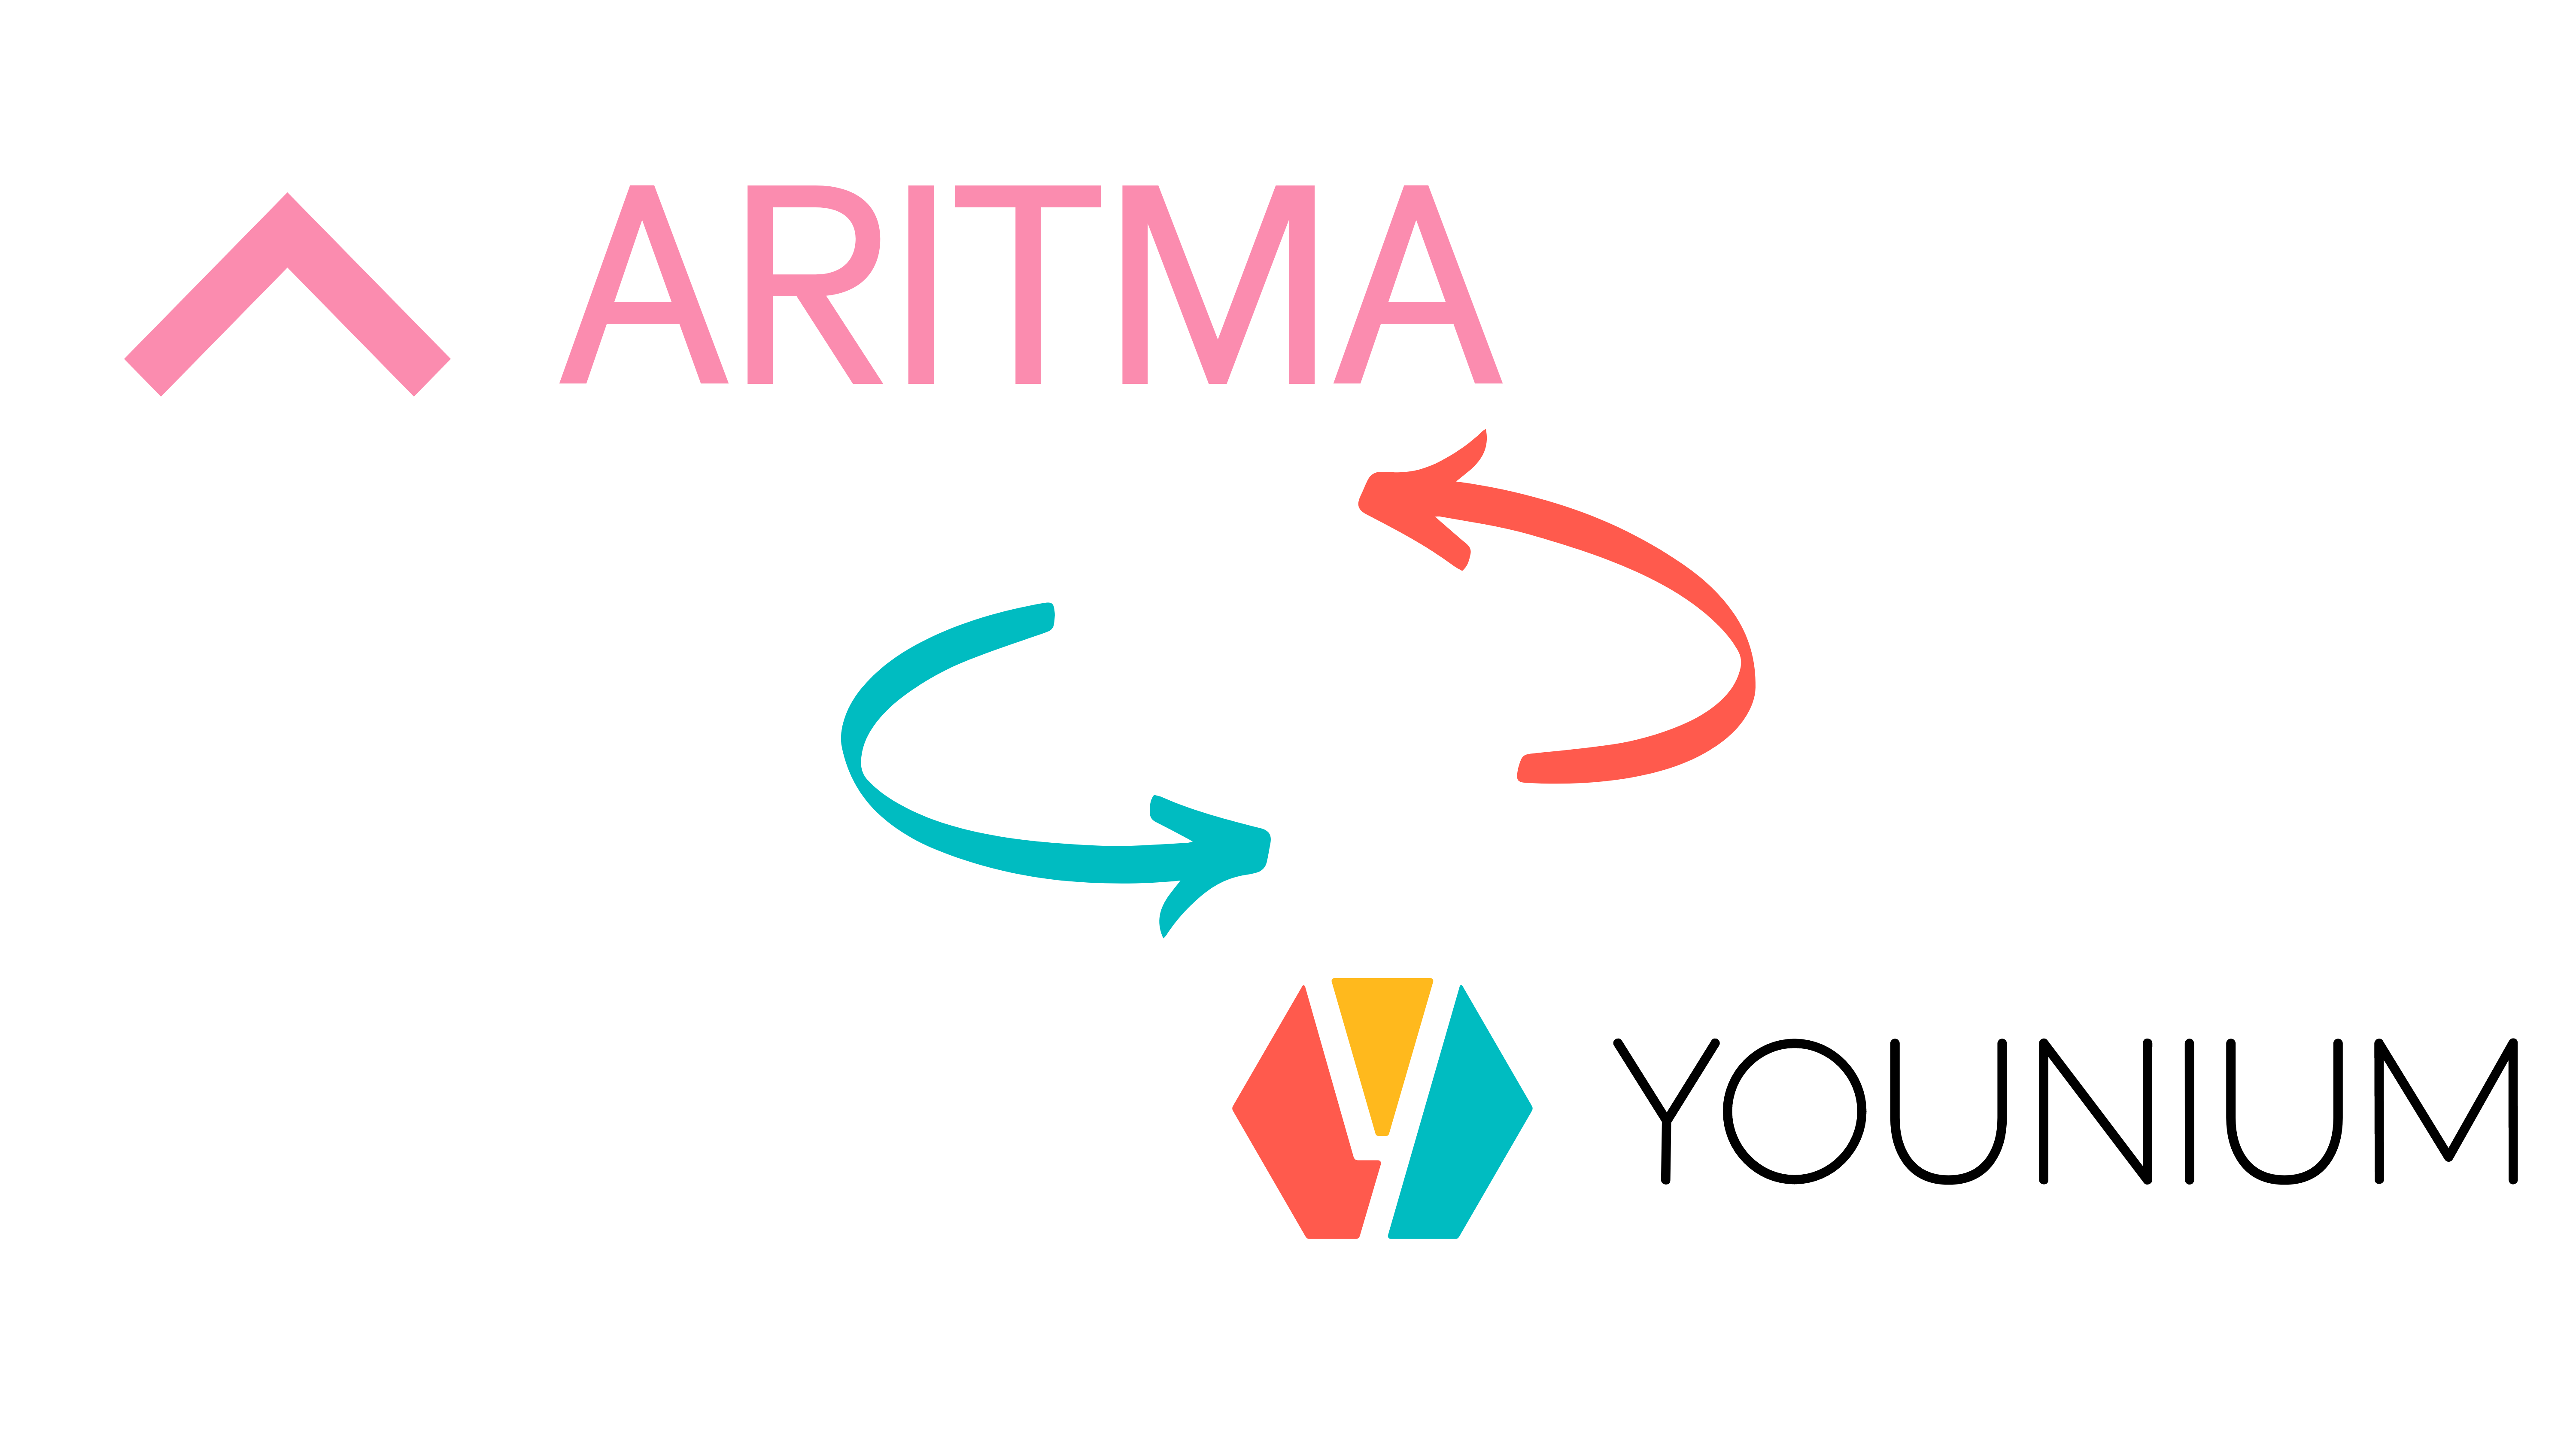 aritma_connector